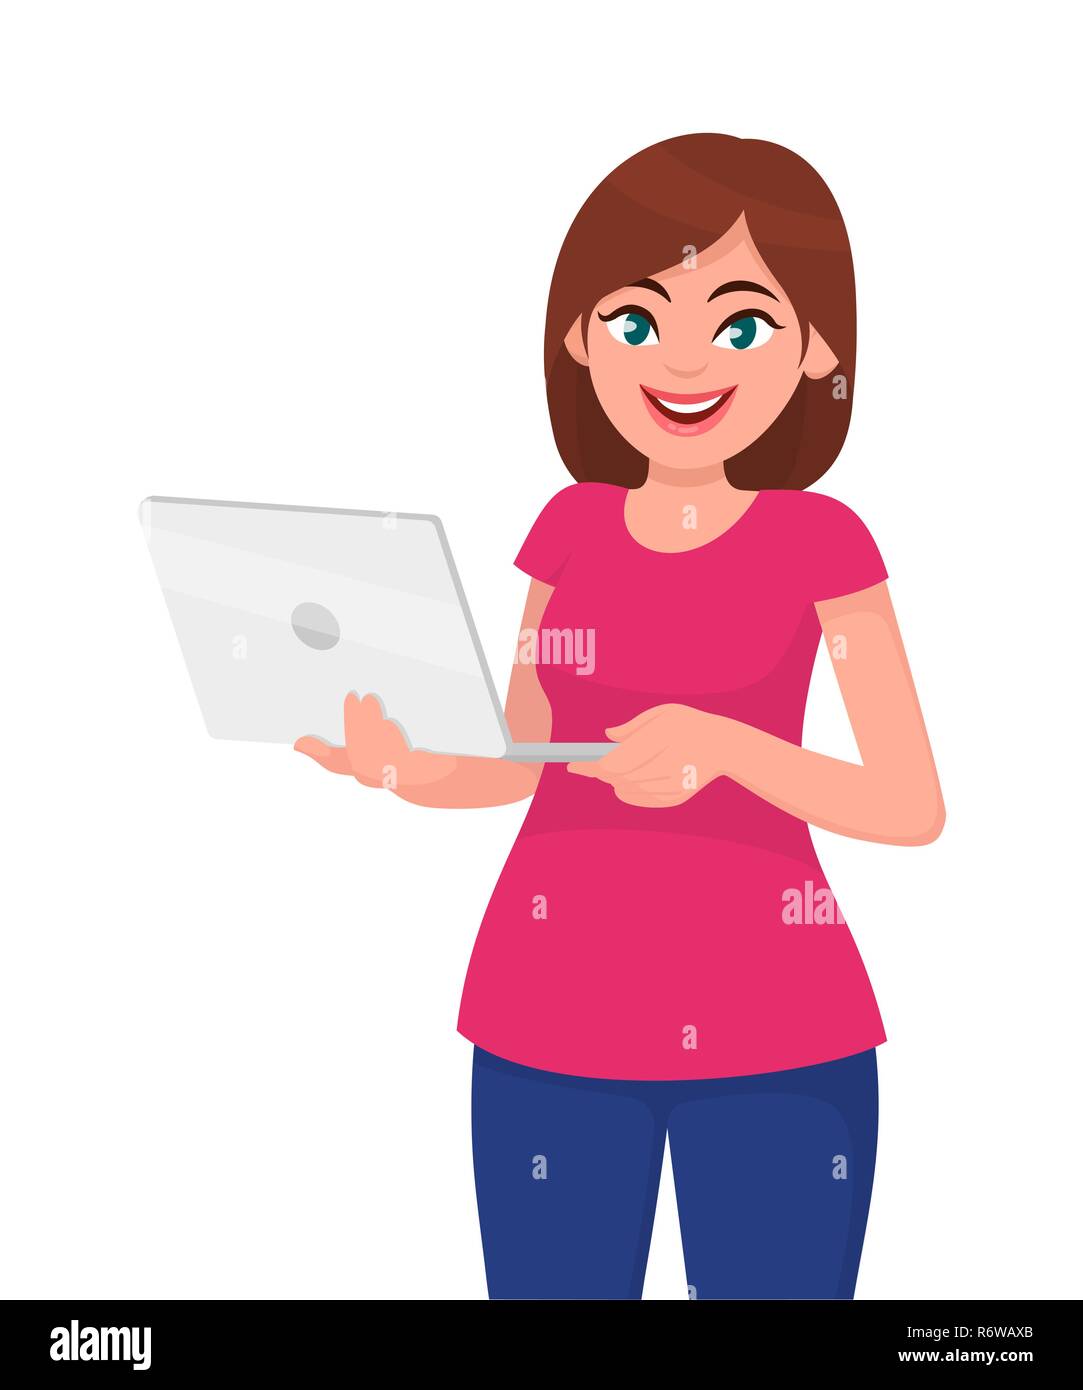 Junge Frau mit Laptop Computer vor weißem Hintergrund. Menschliche Emotion und Körpersprache Konzept Abbildung in Vektor cartoon Flat Style. Stock Vektor